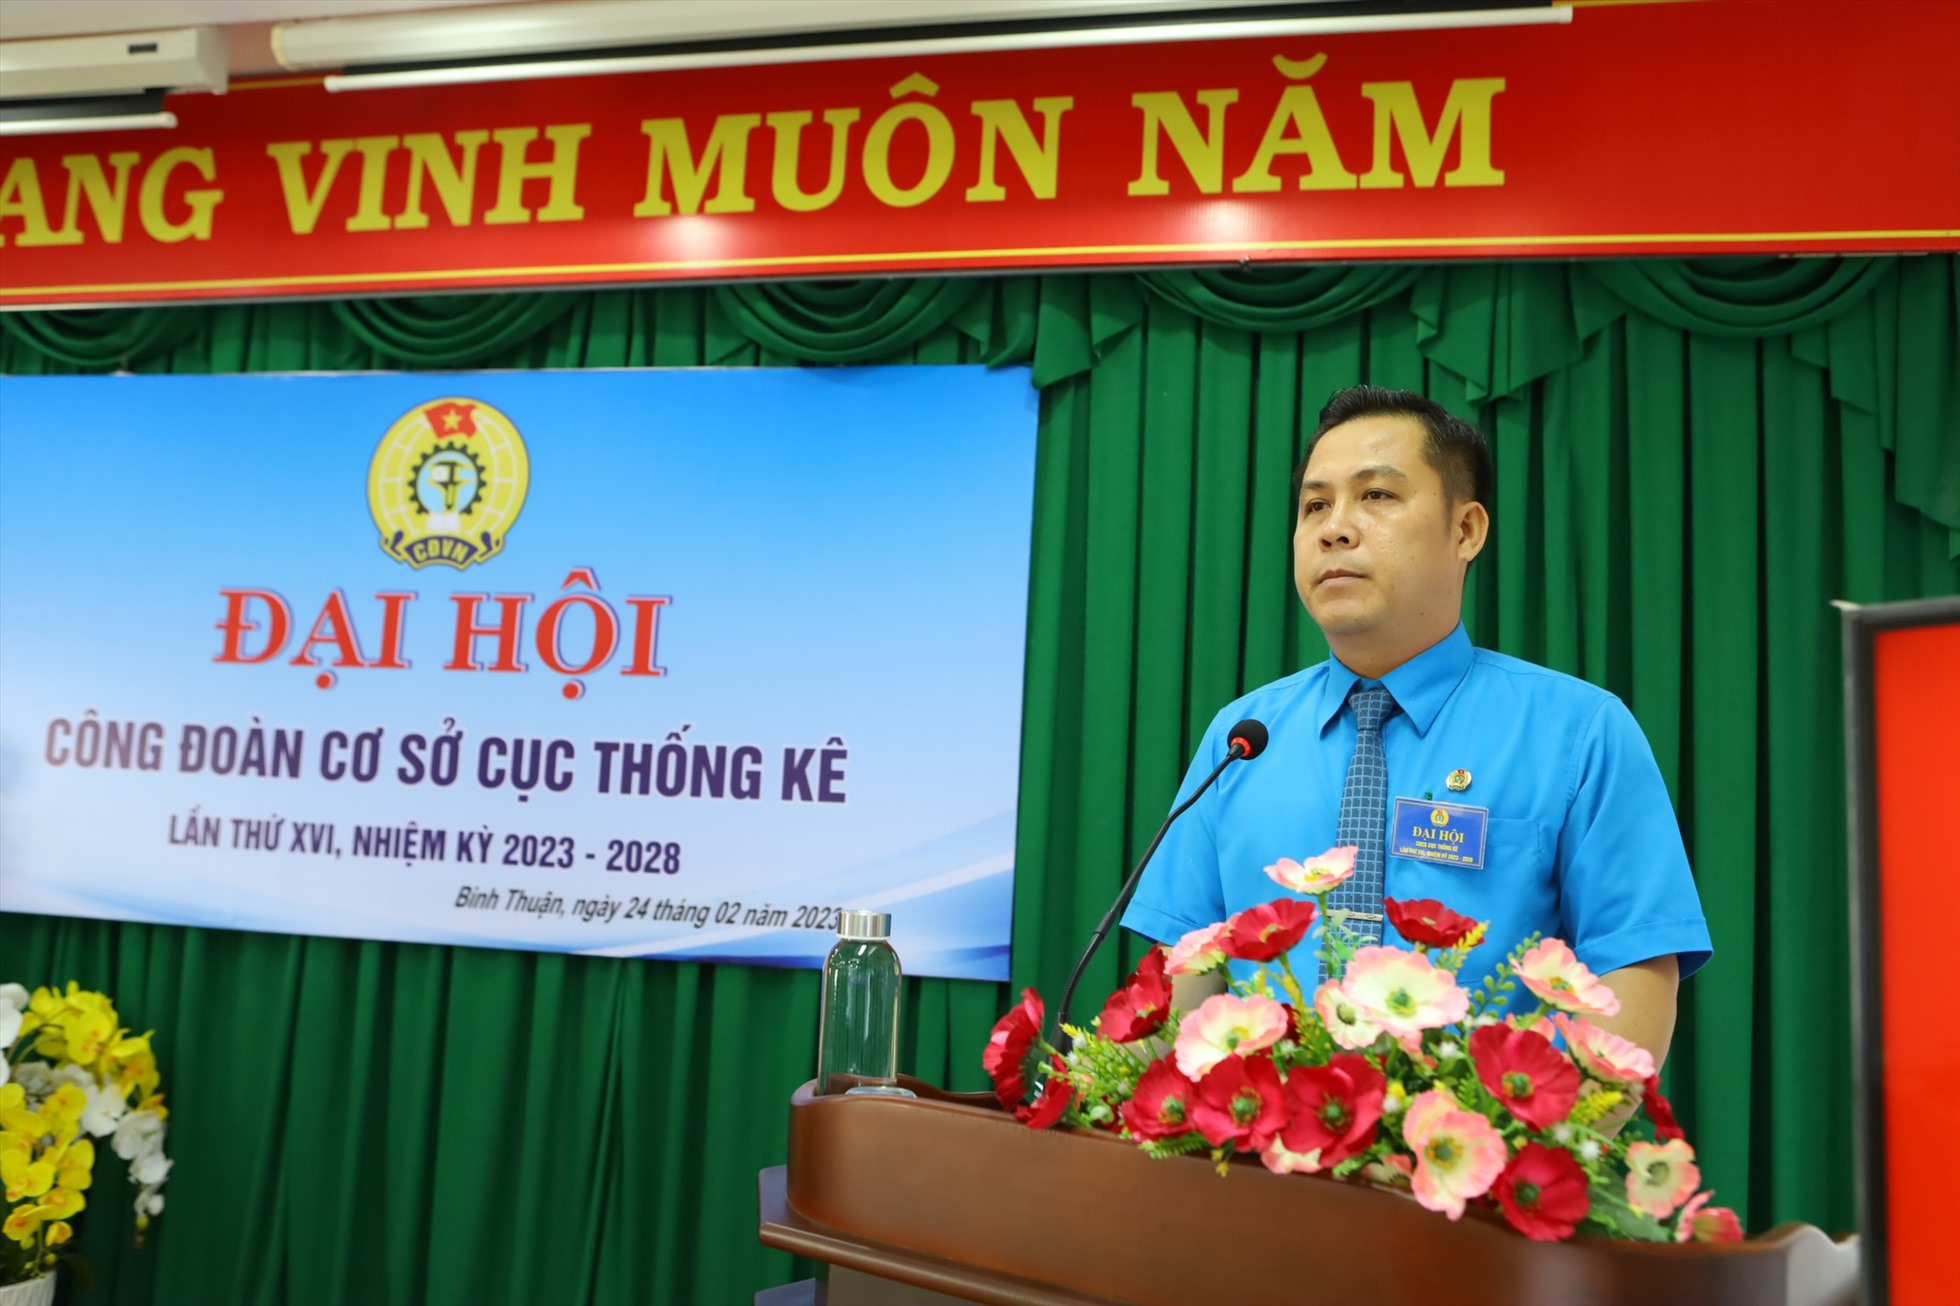 Đồng chí Trần Ngọc Phúc, chủ tịch CĐVC tỉnh Bình Thuận phát biểu chỉ đạo tại đại hội điểm. Ảnh: Duy Tuấn